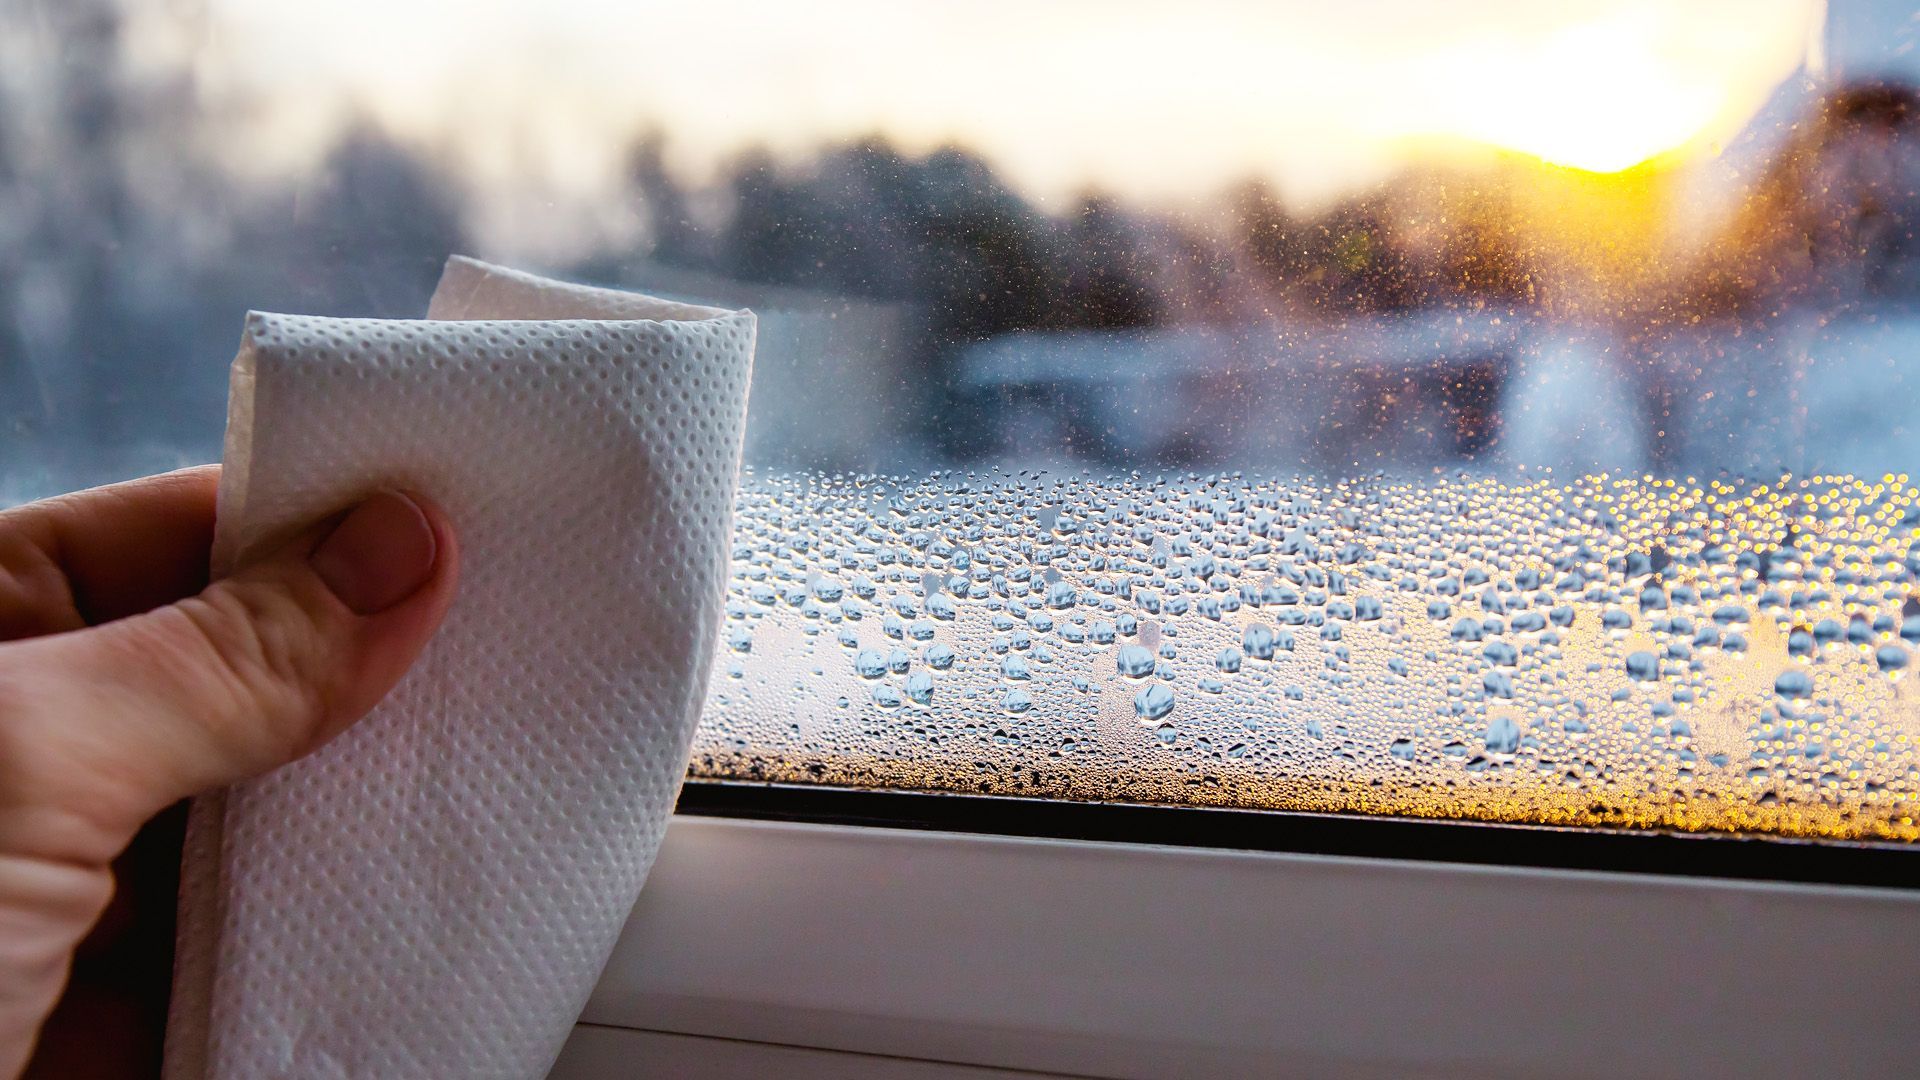 Kondenswasser am Fenster: So kannst du die Luftfeuchtigkeit senken